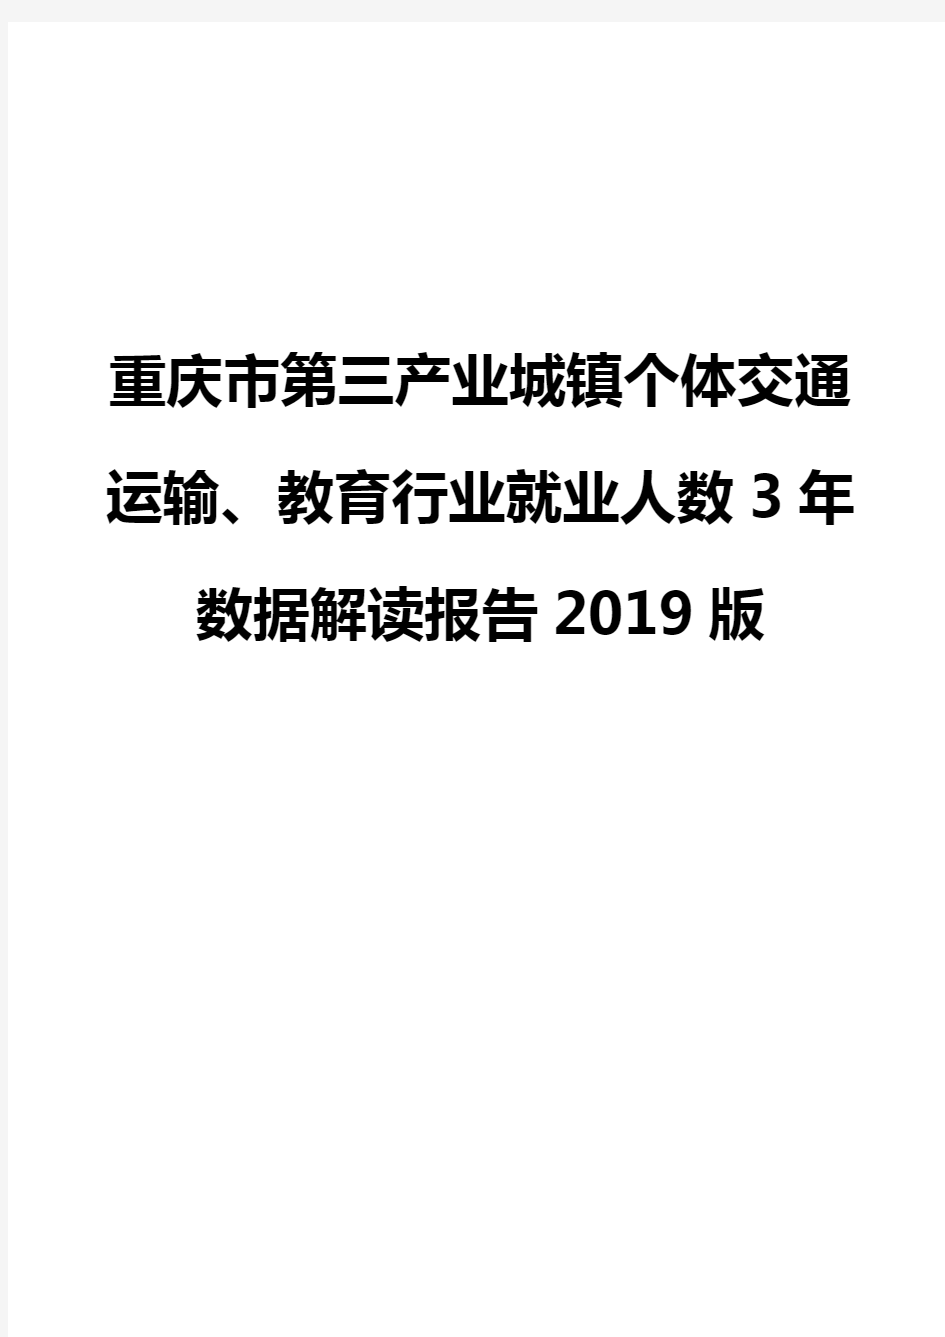 重庆市第三产业城镇个体交通运输、教育行业就业人数3年数据解读报告2019版